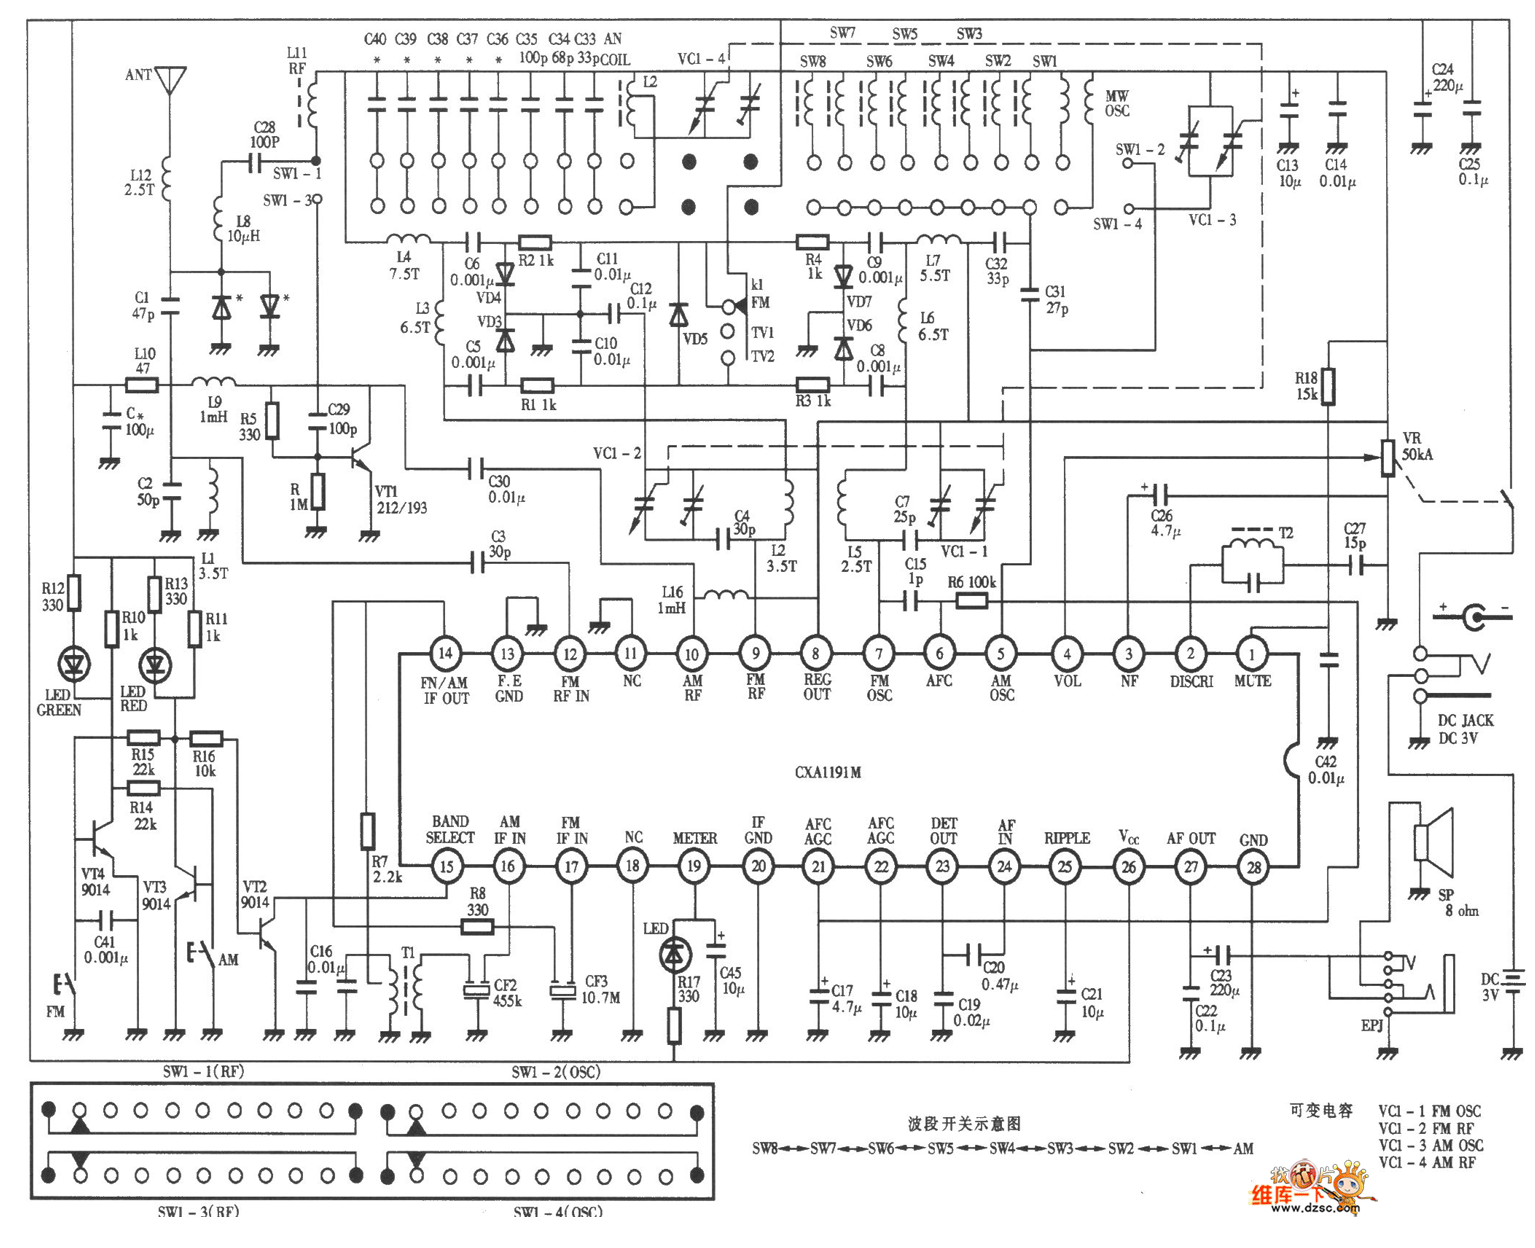 德生1012型12波段调频、中波、短波、电视伴音收音机电路图